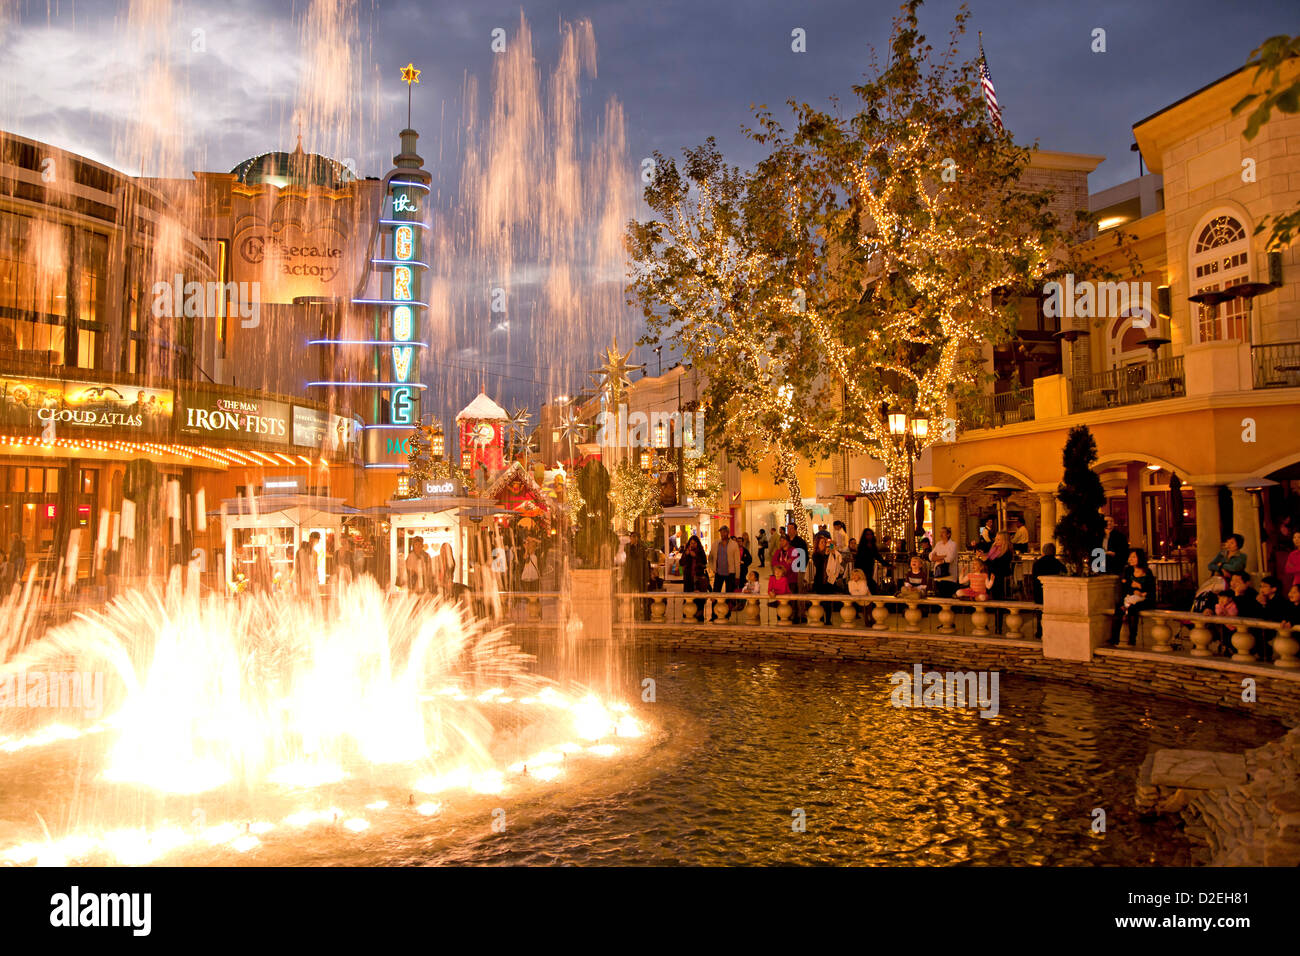 Décoration de Noël et l'éclairage à la fontaine du village, un centre commercial à Los Angeles, Californie, USA Banque D'Images